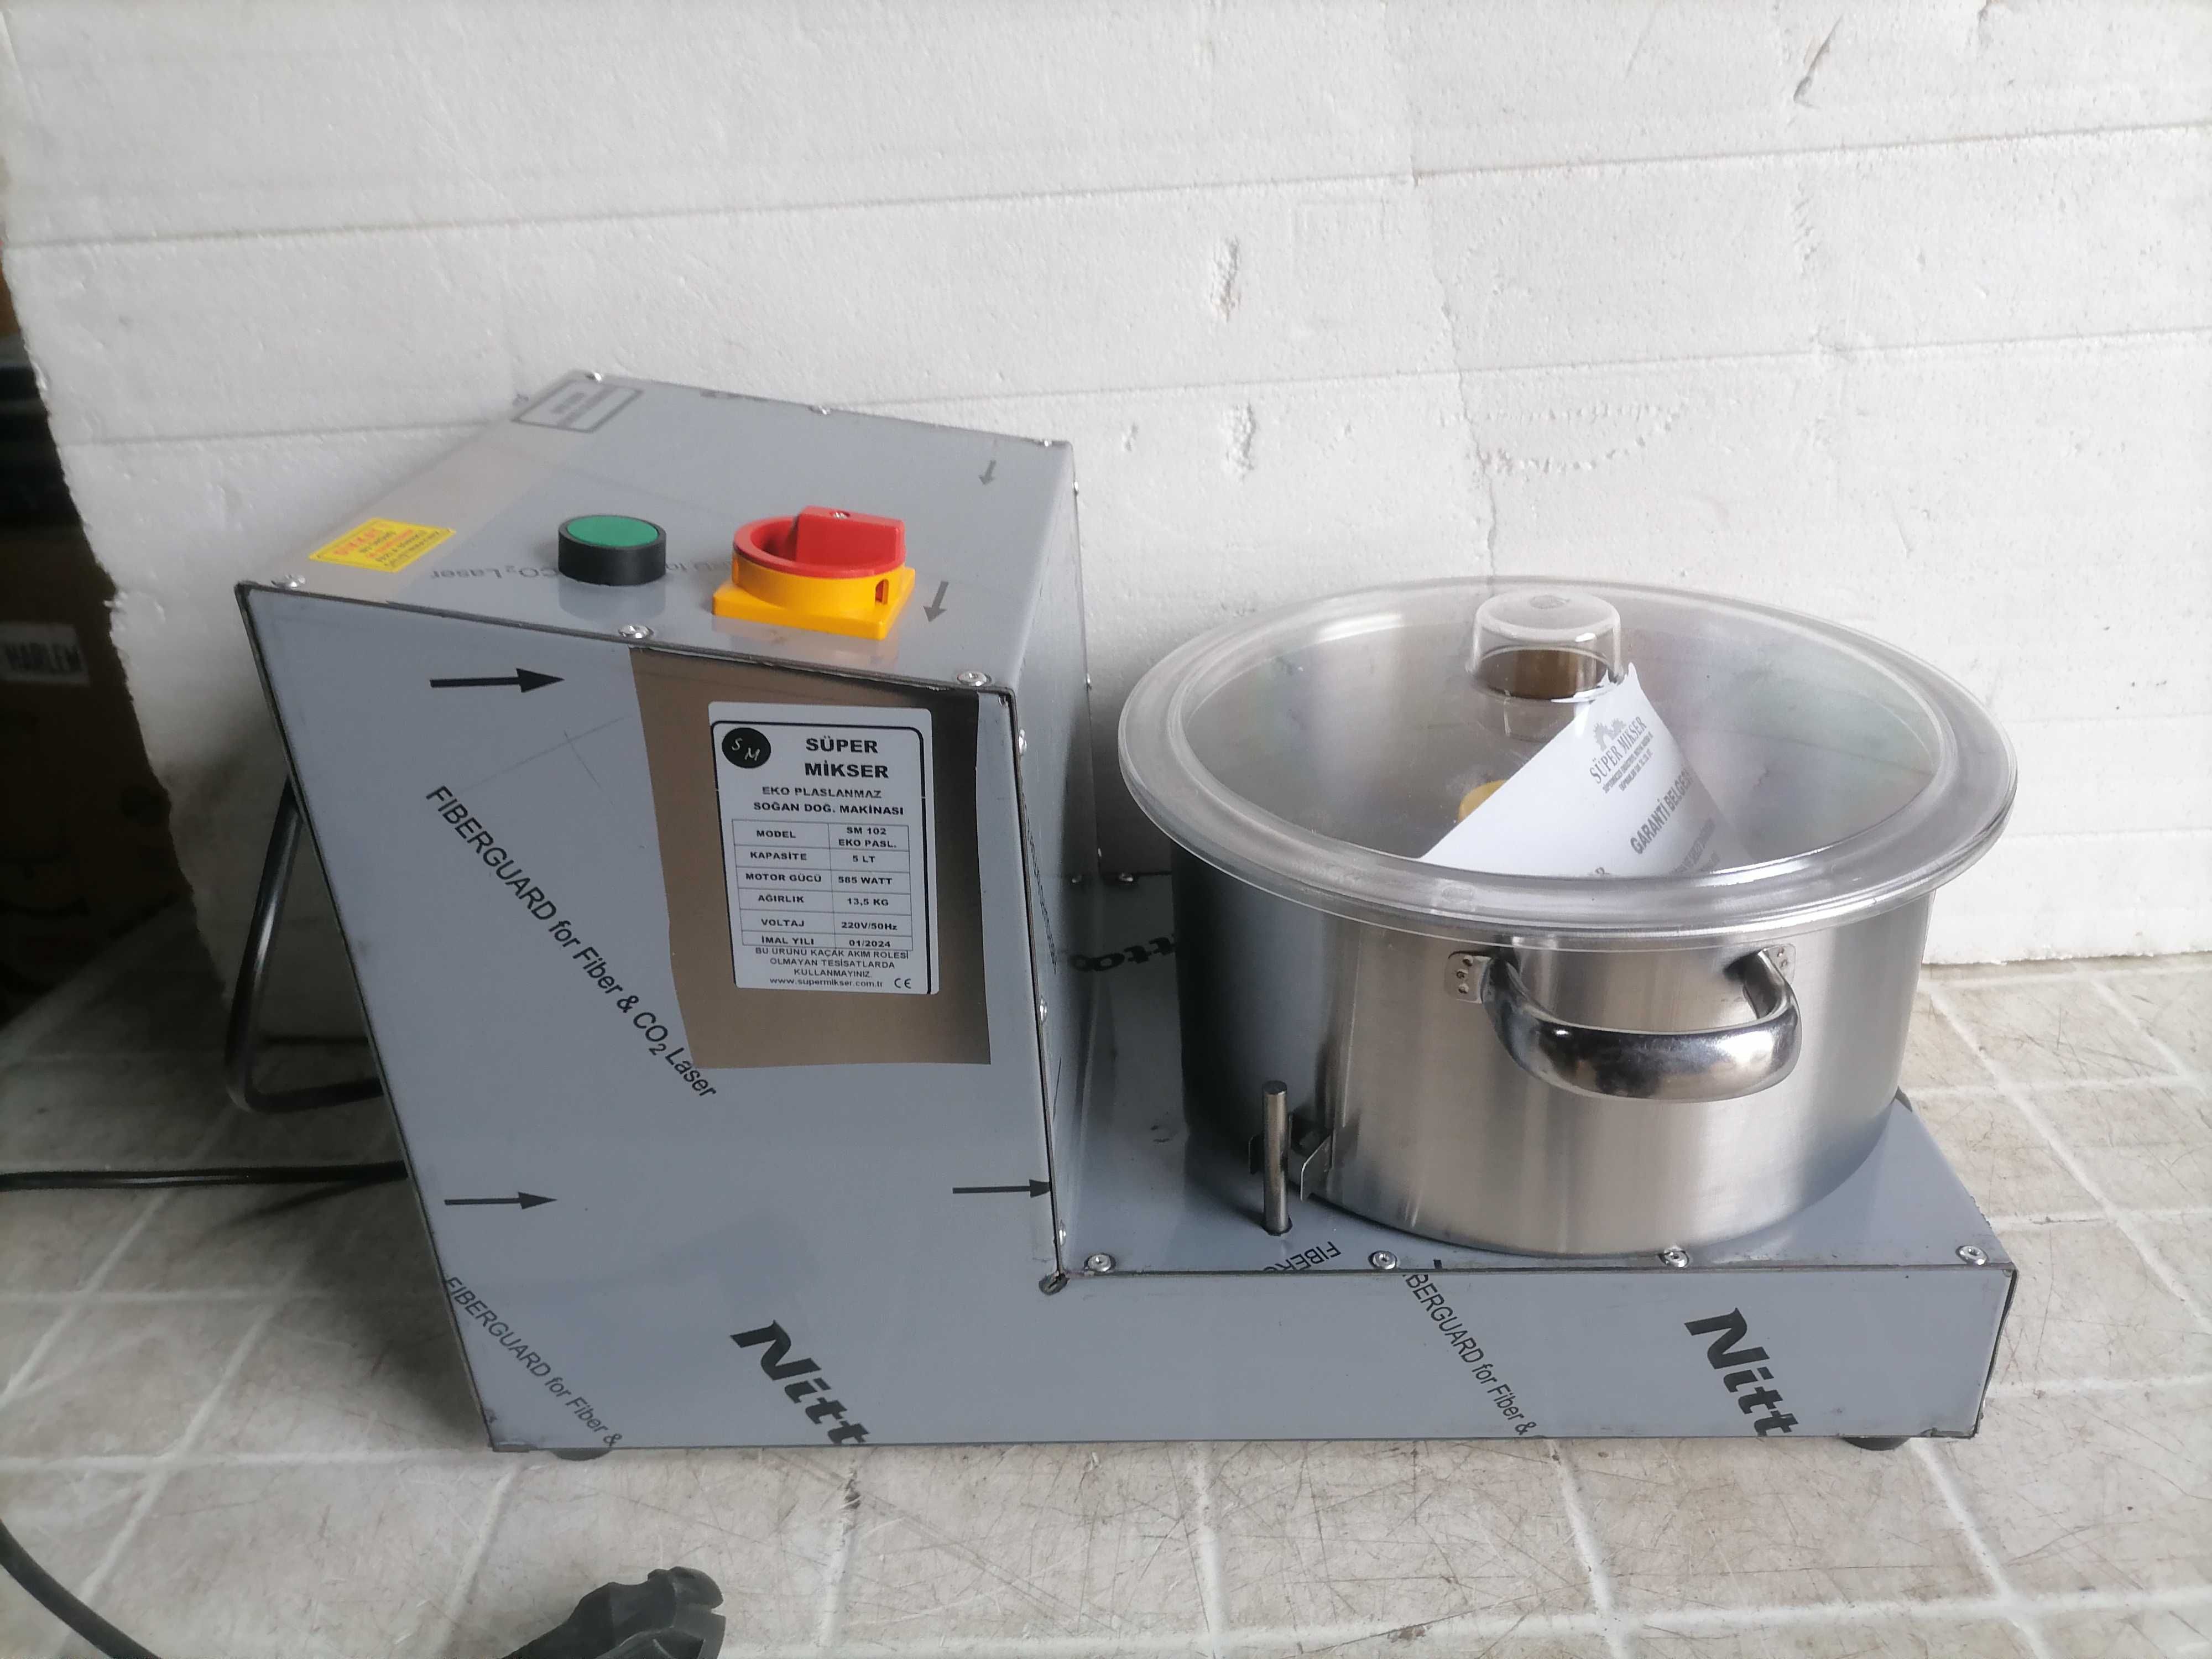 Кутер  - зеленчукорезачка, машина за раздробяване на зеленчуци